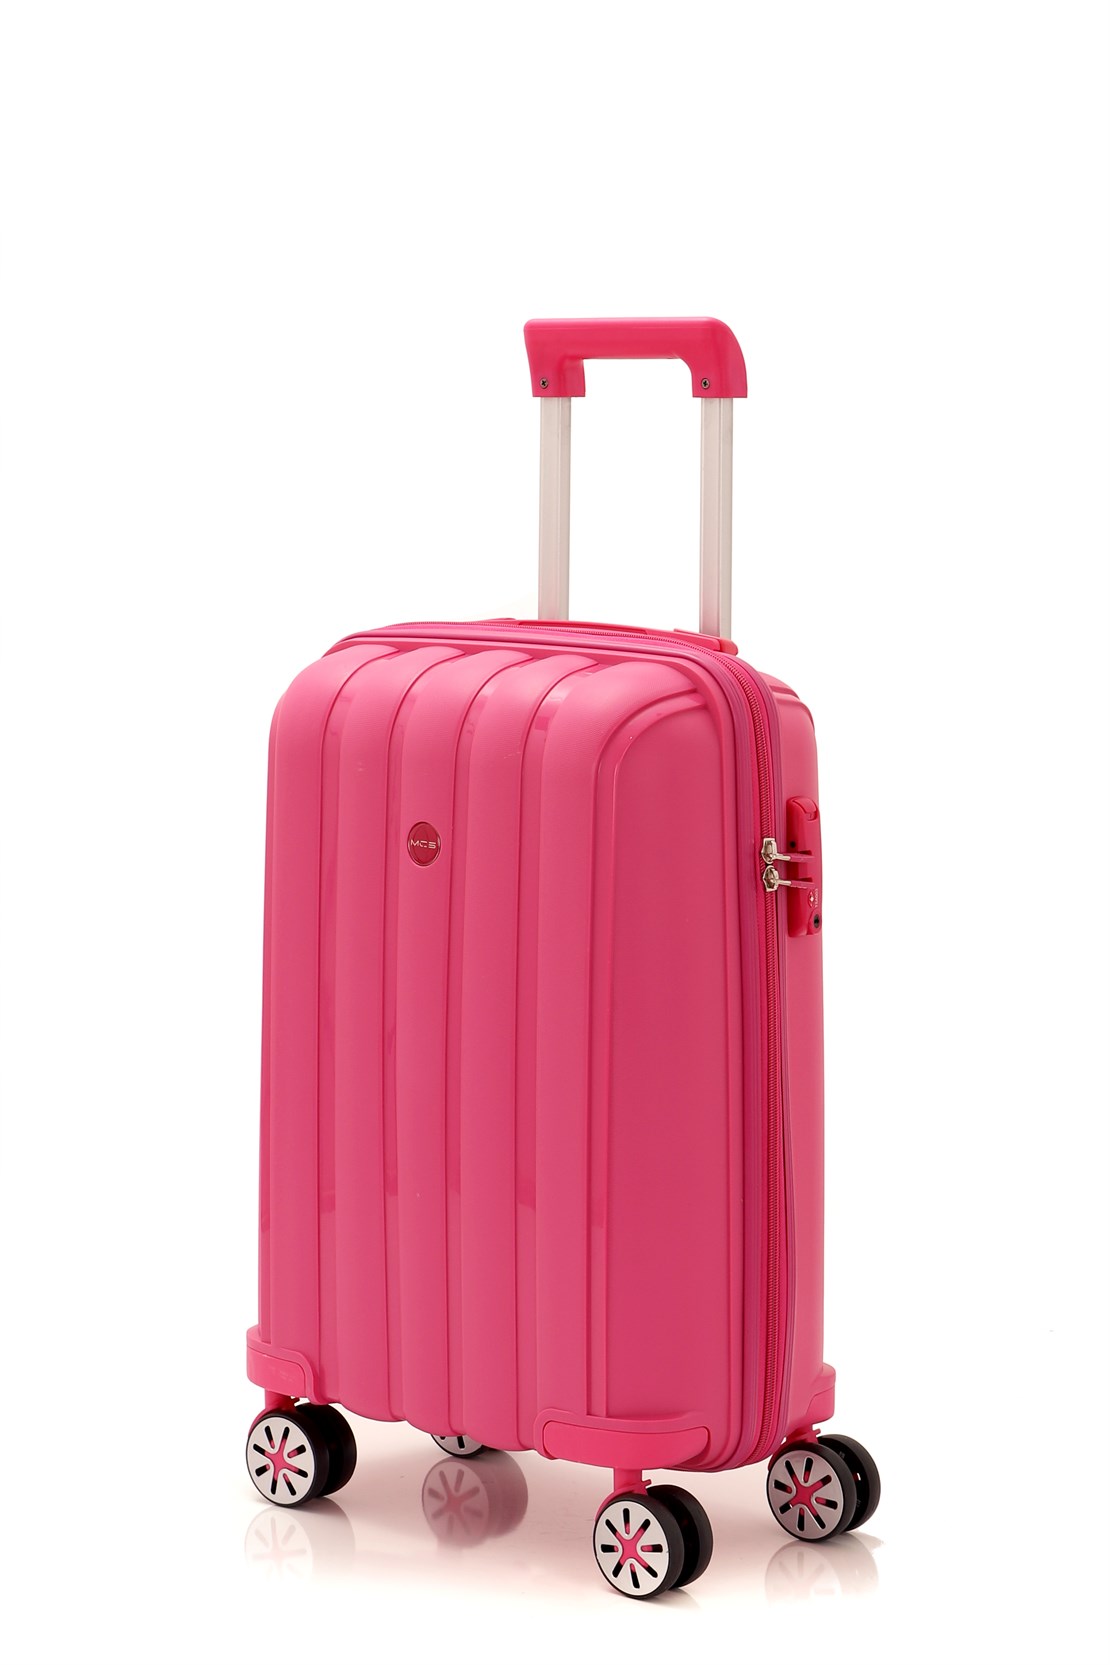 Маленький чемодан для ручьной клади из полипропилена MCS V305 S ! Для 8-10 кг! - 1